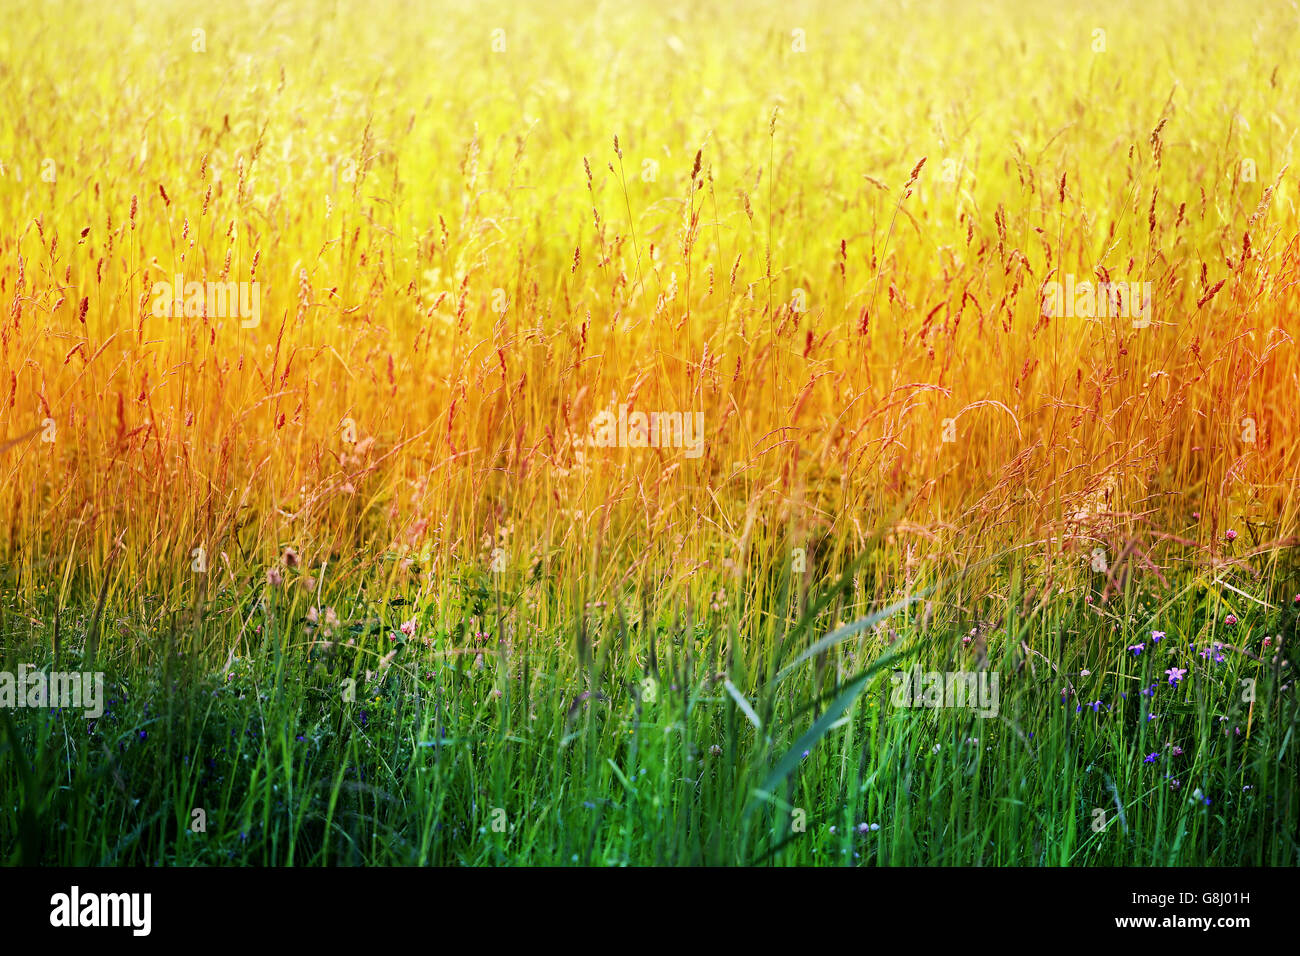 Fotos de hierba verde brillante sobre una pradera de verano Foto de stock